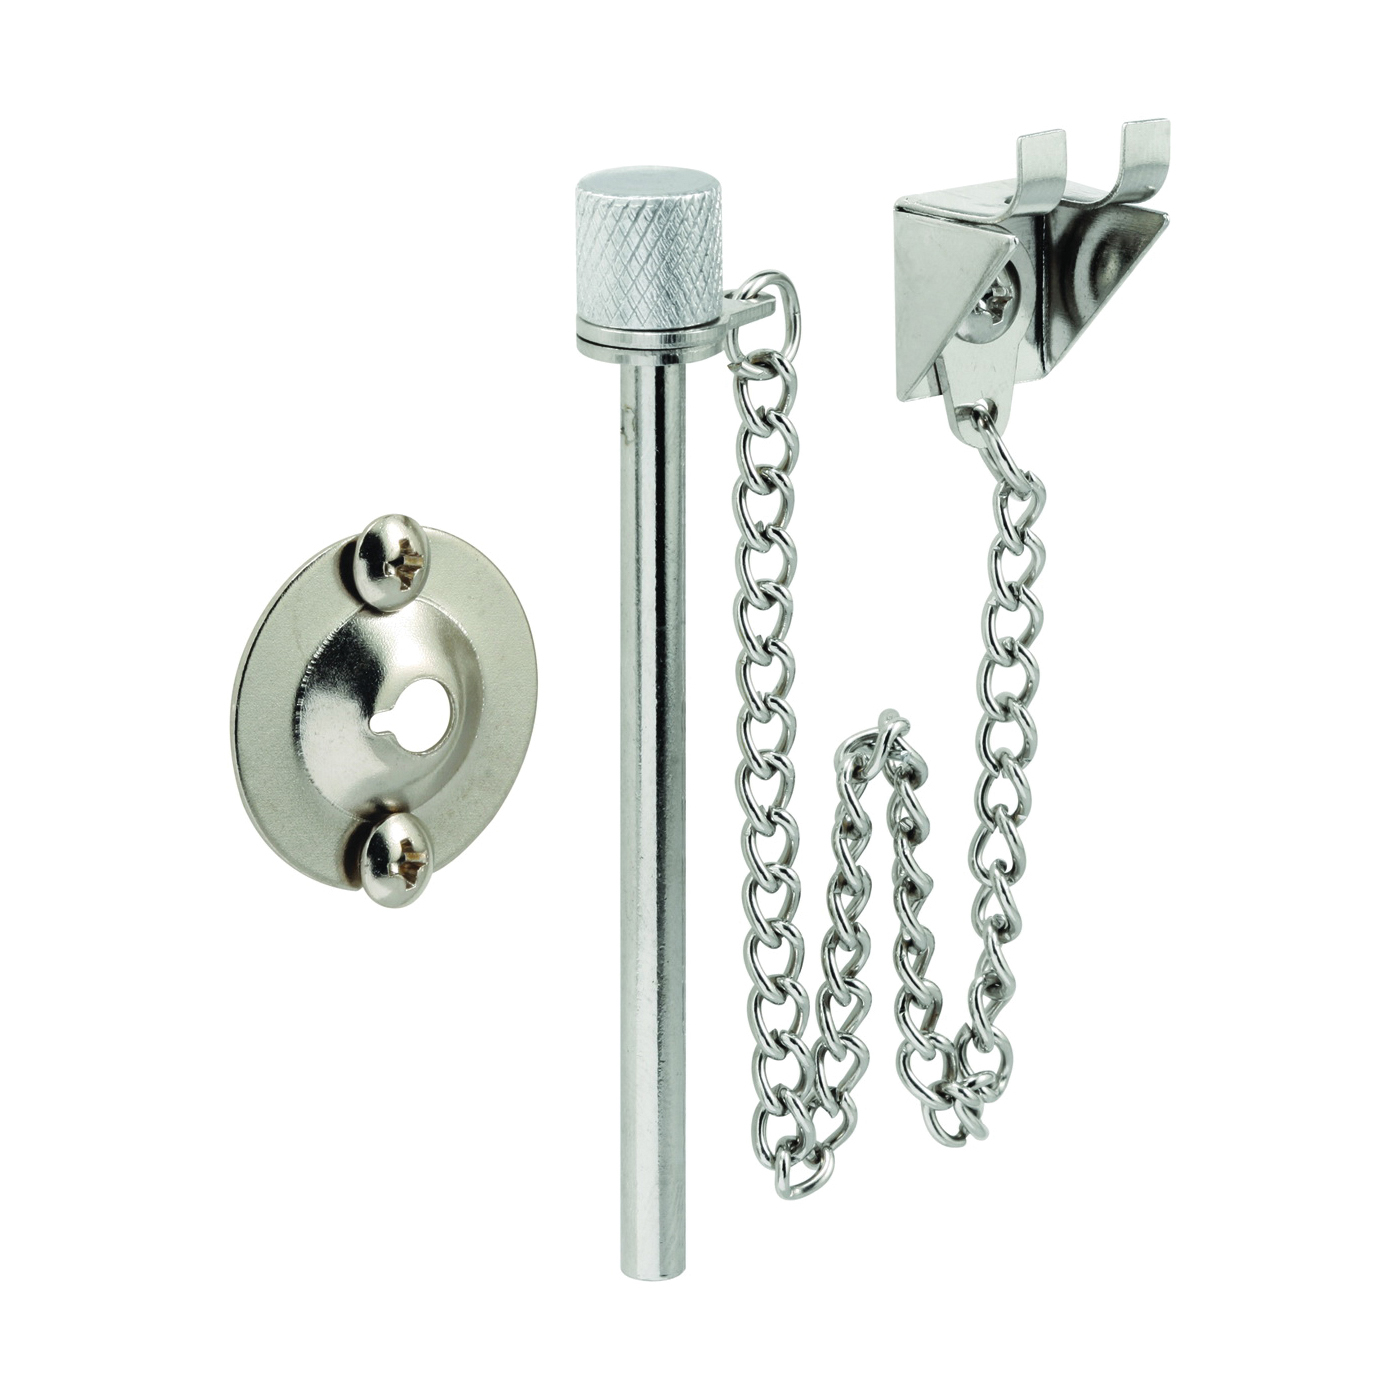 U 9858 Patio Door Lock, Steel, Chrome, 1-3/8 to 1-3/4 in Thick Door